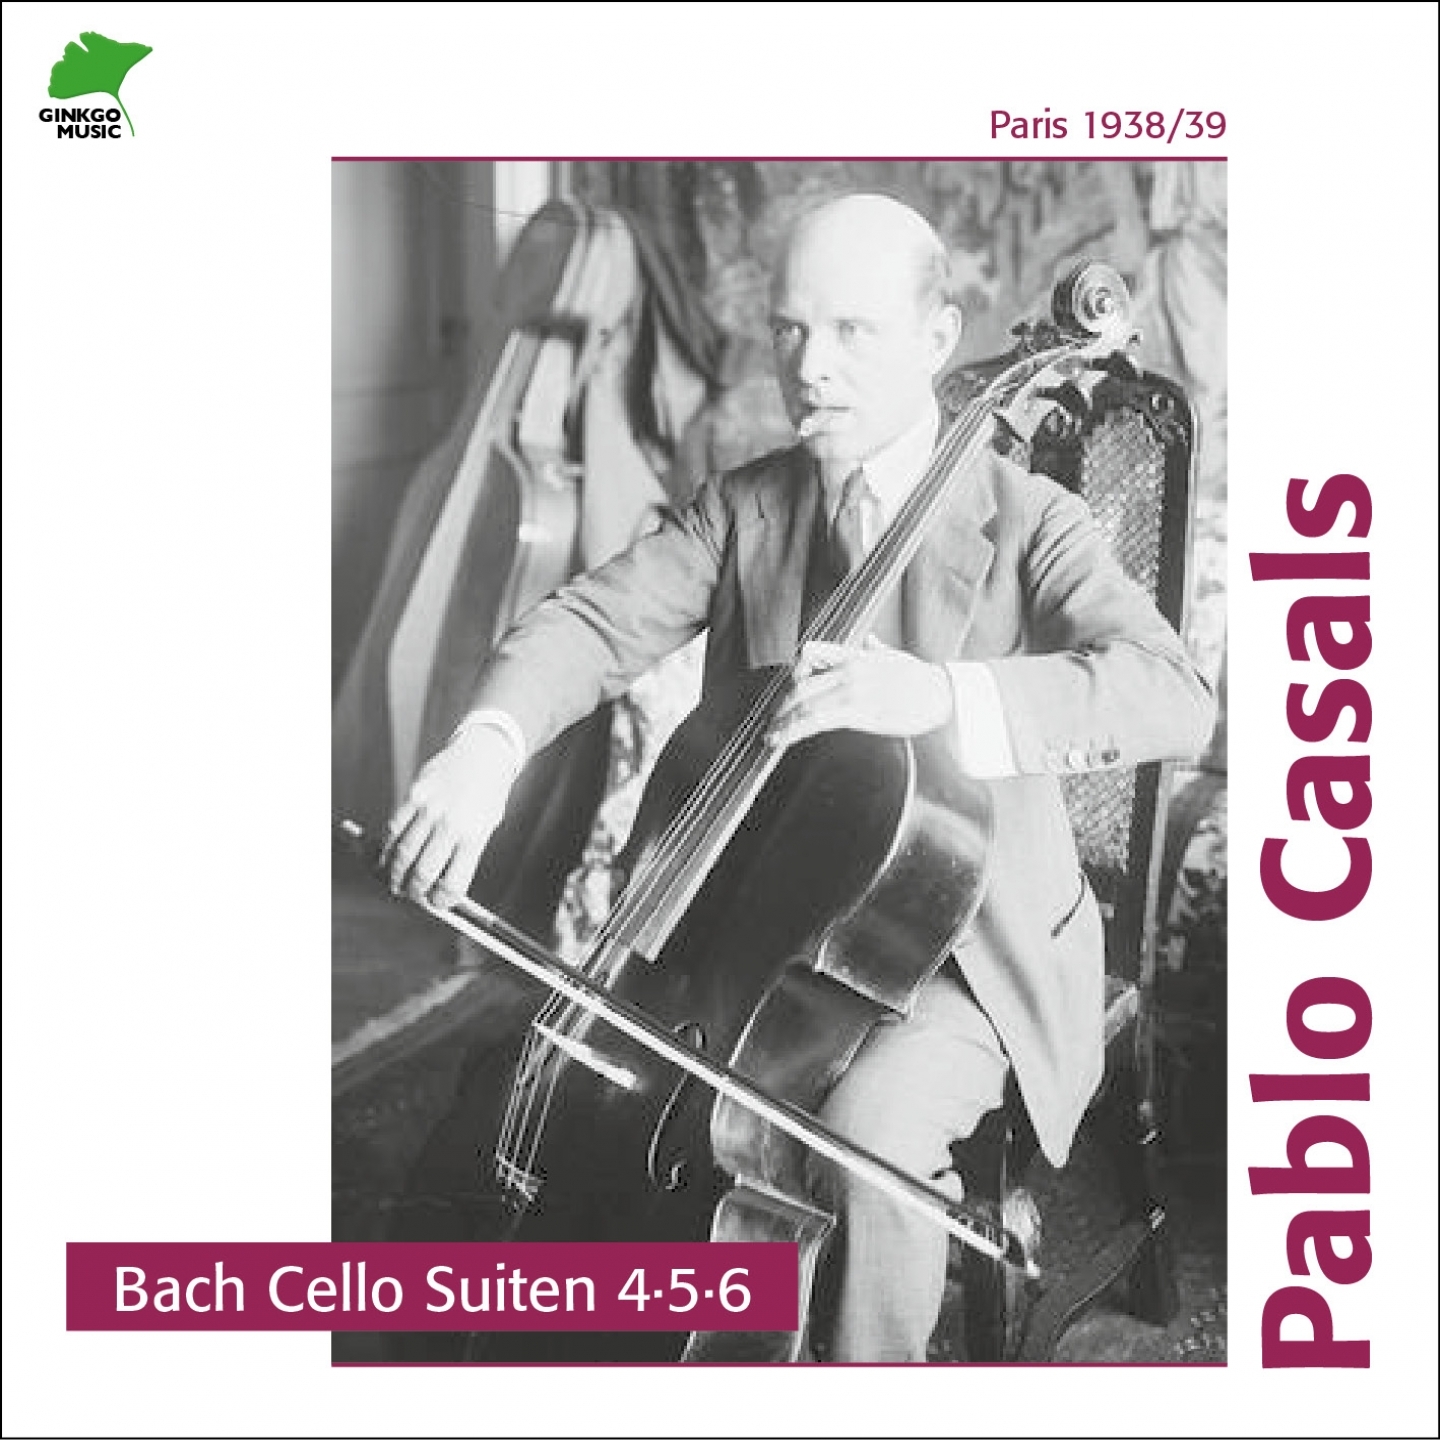 Cello Suite No. 5, in C Minor, BWV 1011 Pre lude